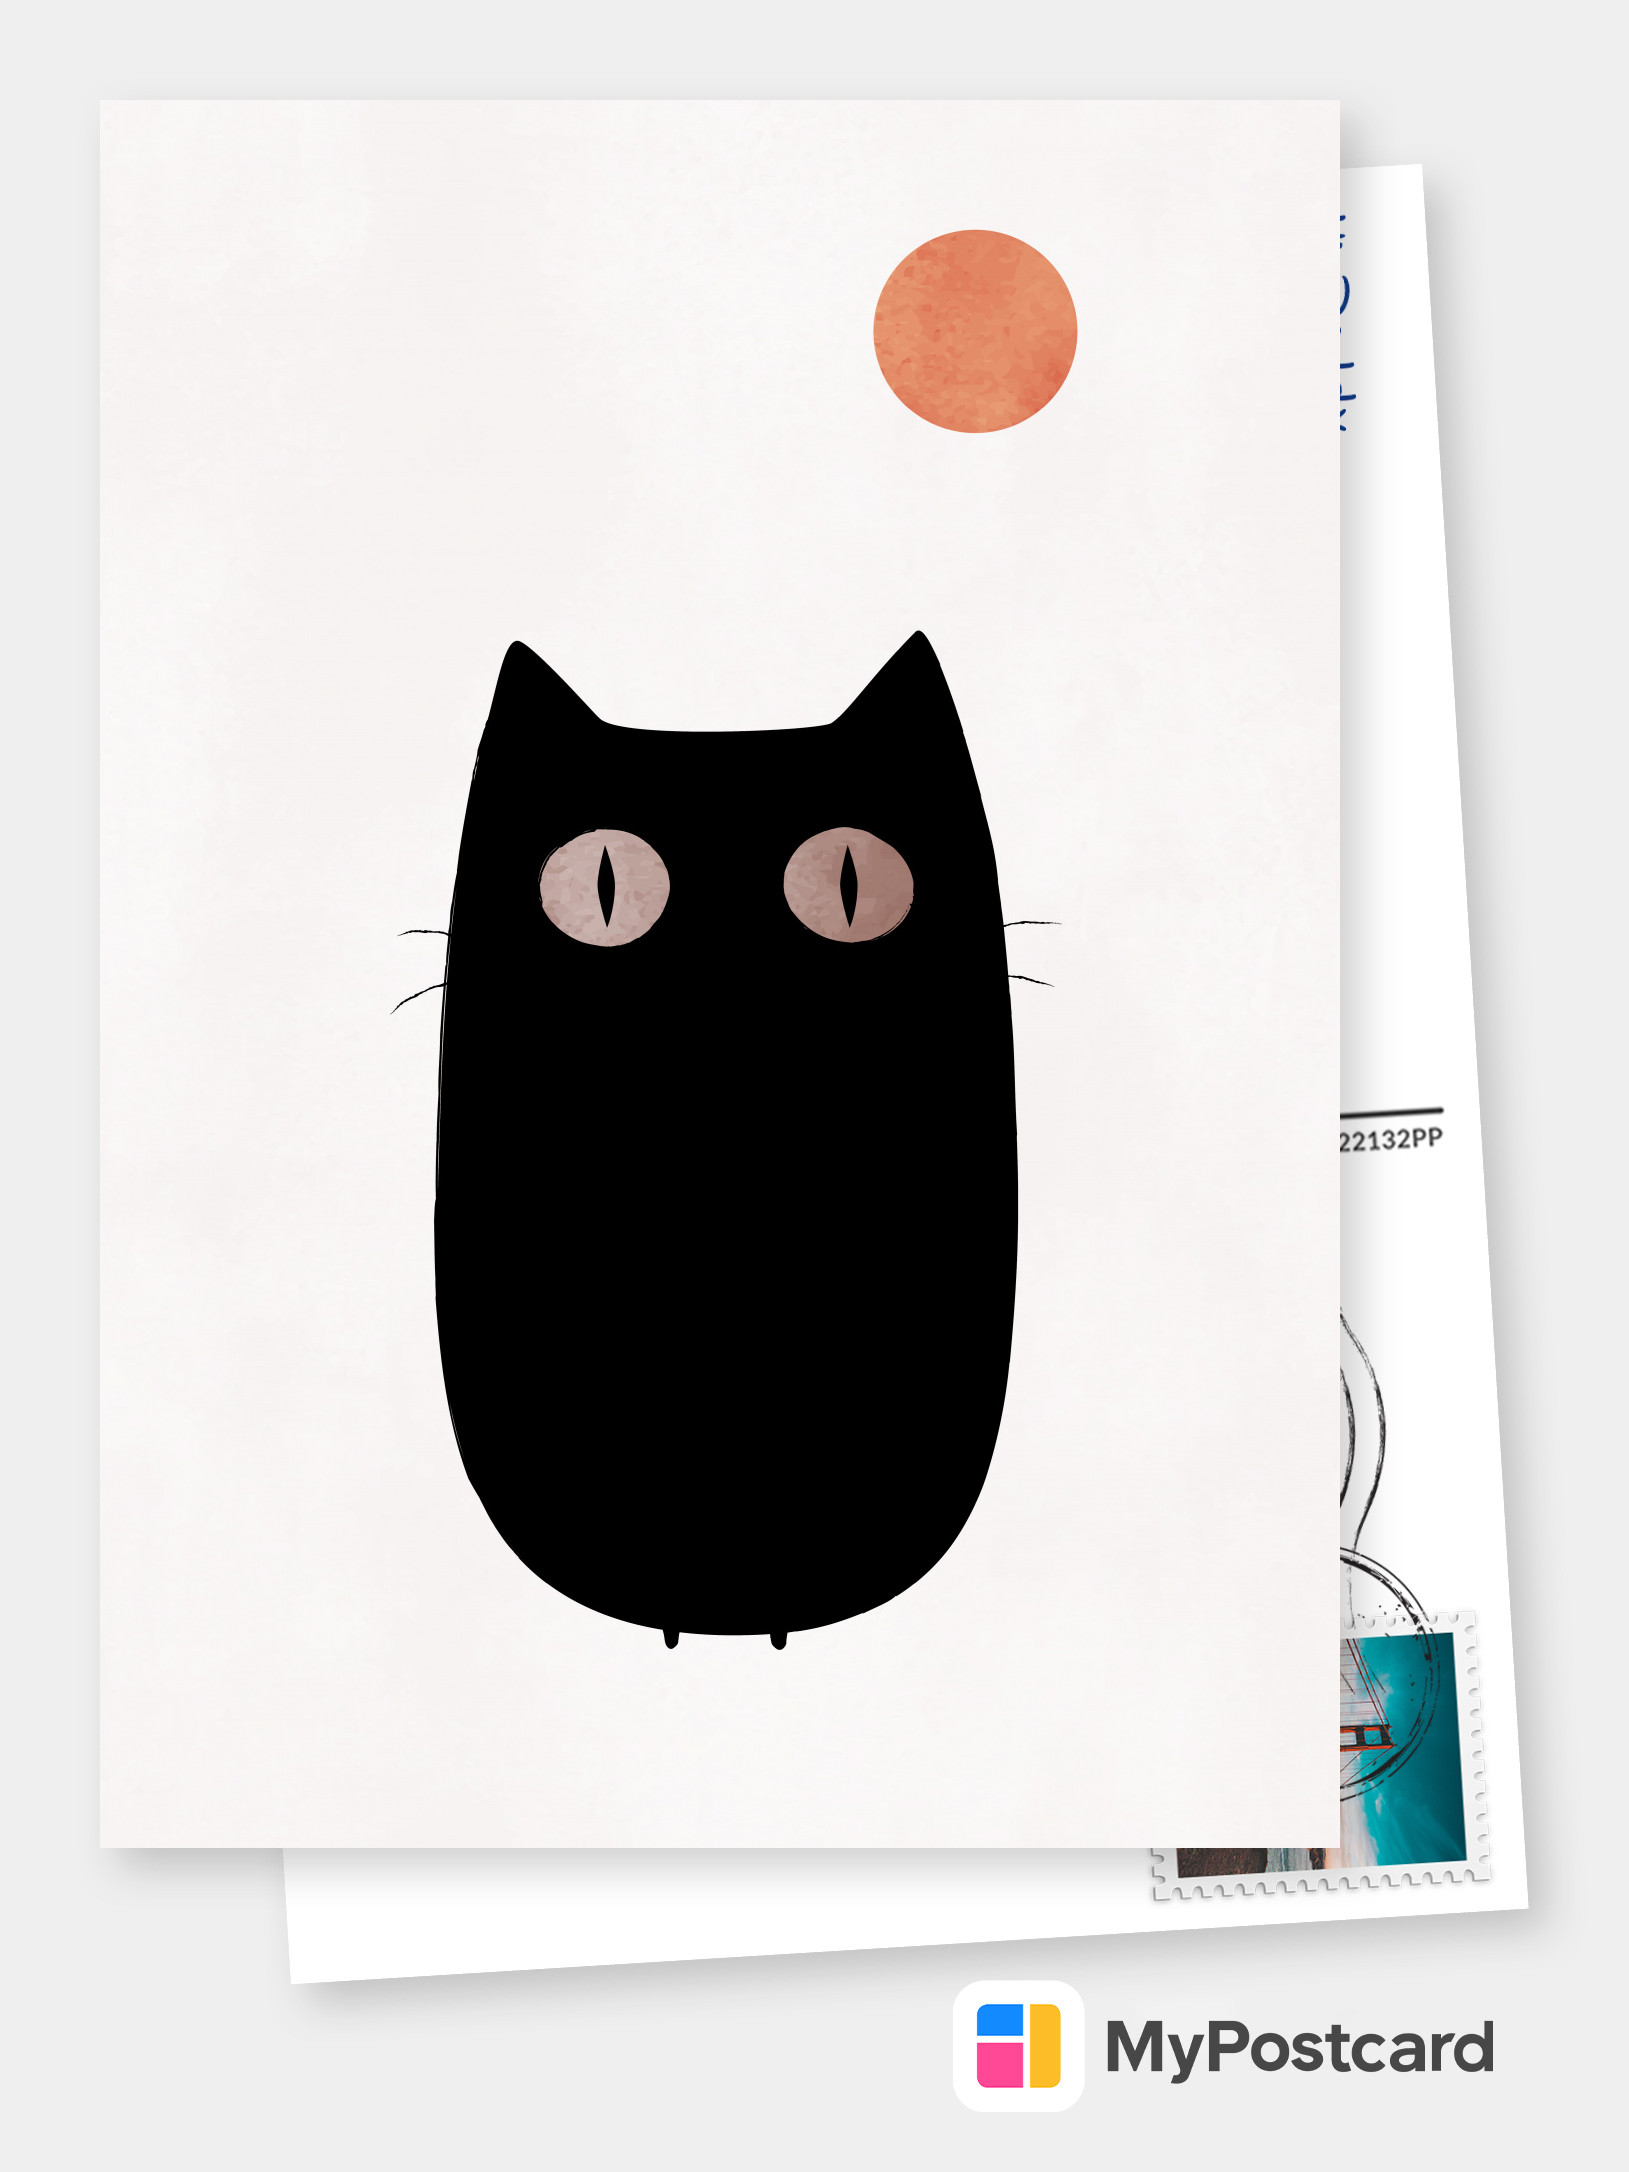 Bộ sưu tập bưu thiếp với chủ đề mèo sẽ khiến bạn thích thú ngắm nhìn những bức tranh nghệ thuật và ảnh chụp đầy đáng yêu của các bé mèo. Sự kết hợp phối màu và gam sắc tinh tế sẽ mang đến cho bạn những trải nghiệm và cảm xúc mới mẻ khi sở hữu bộ sưu tập này.